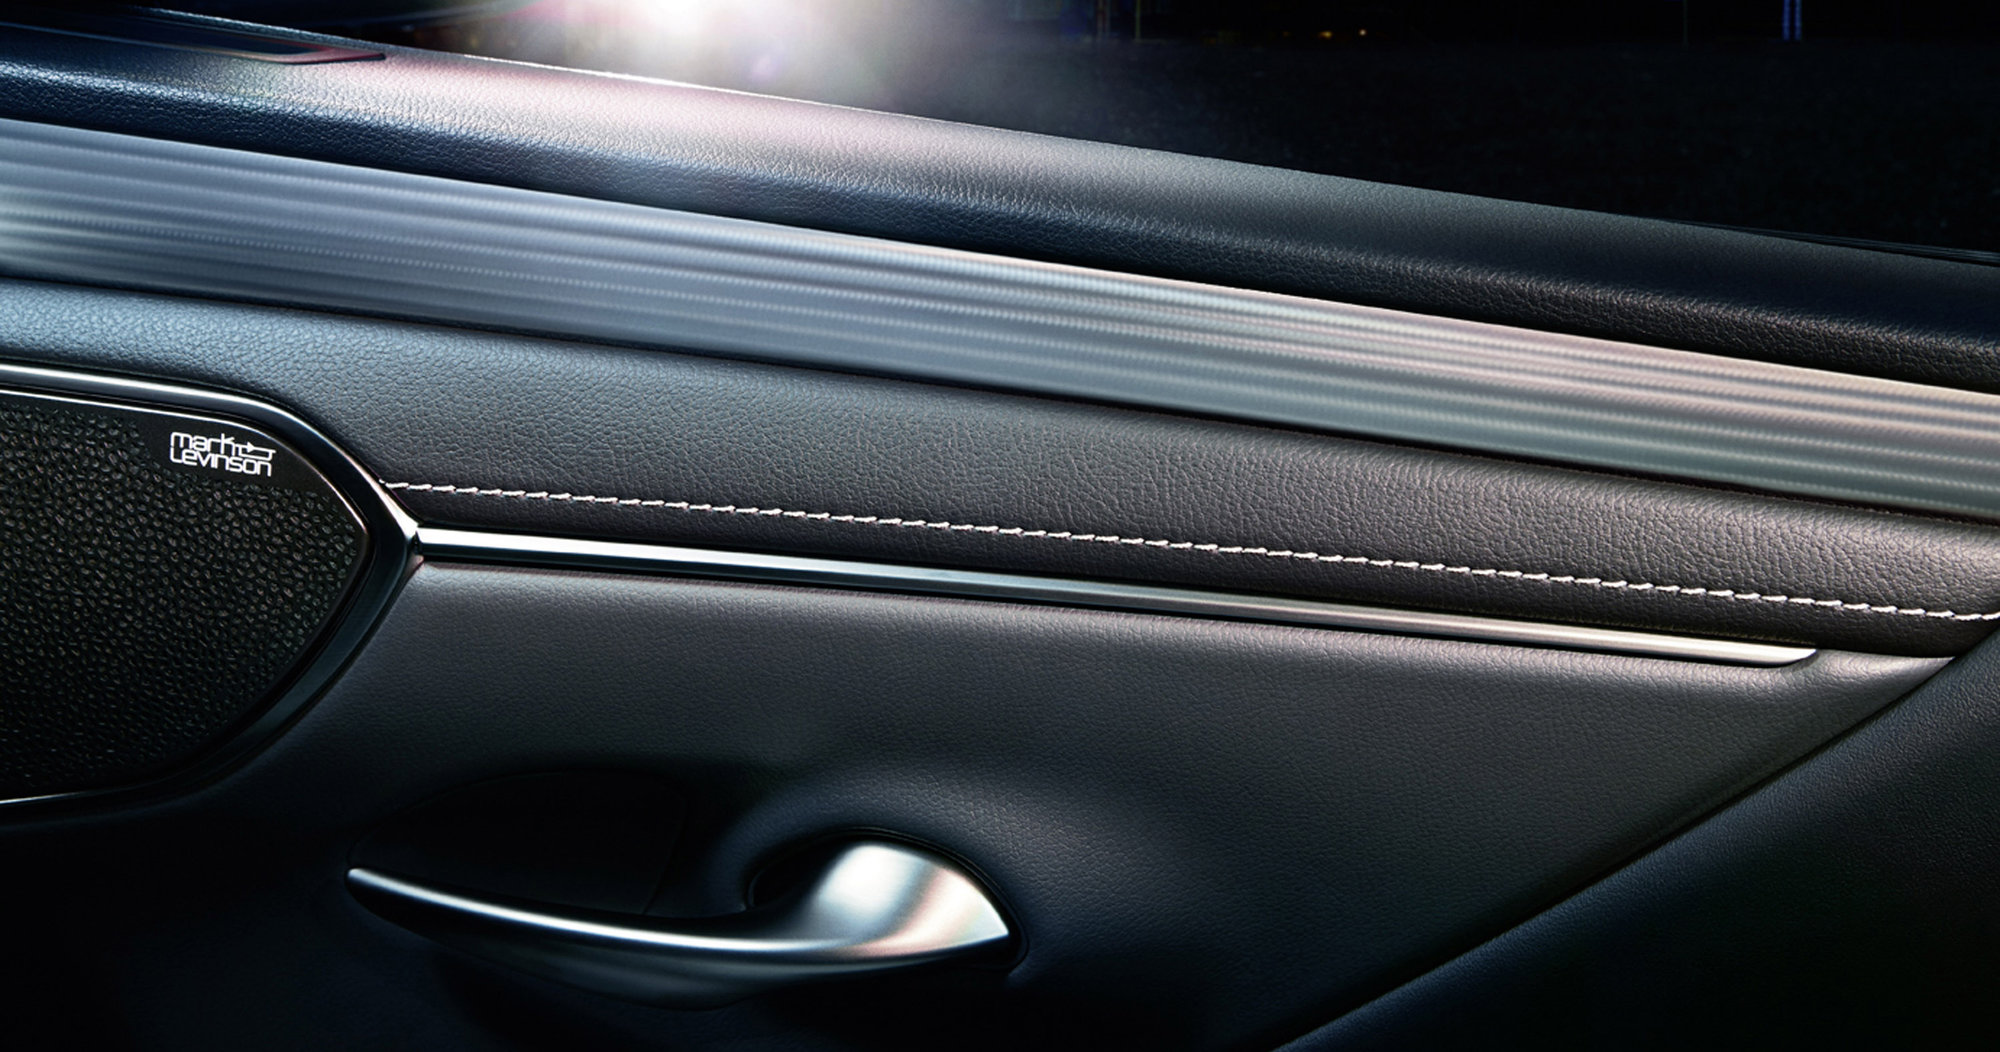 Galería: La belleza refinada de una catana incorporada en el diseño del nuevo Lexus ES 300h